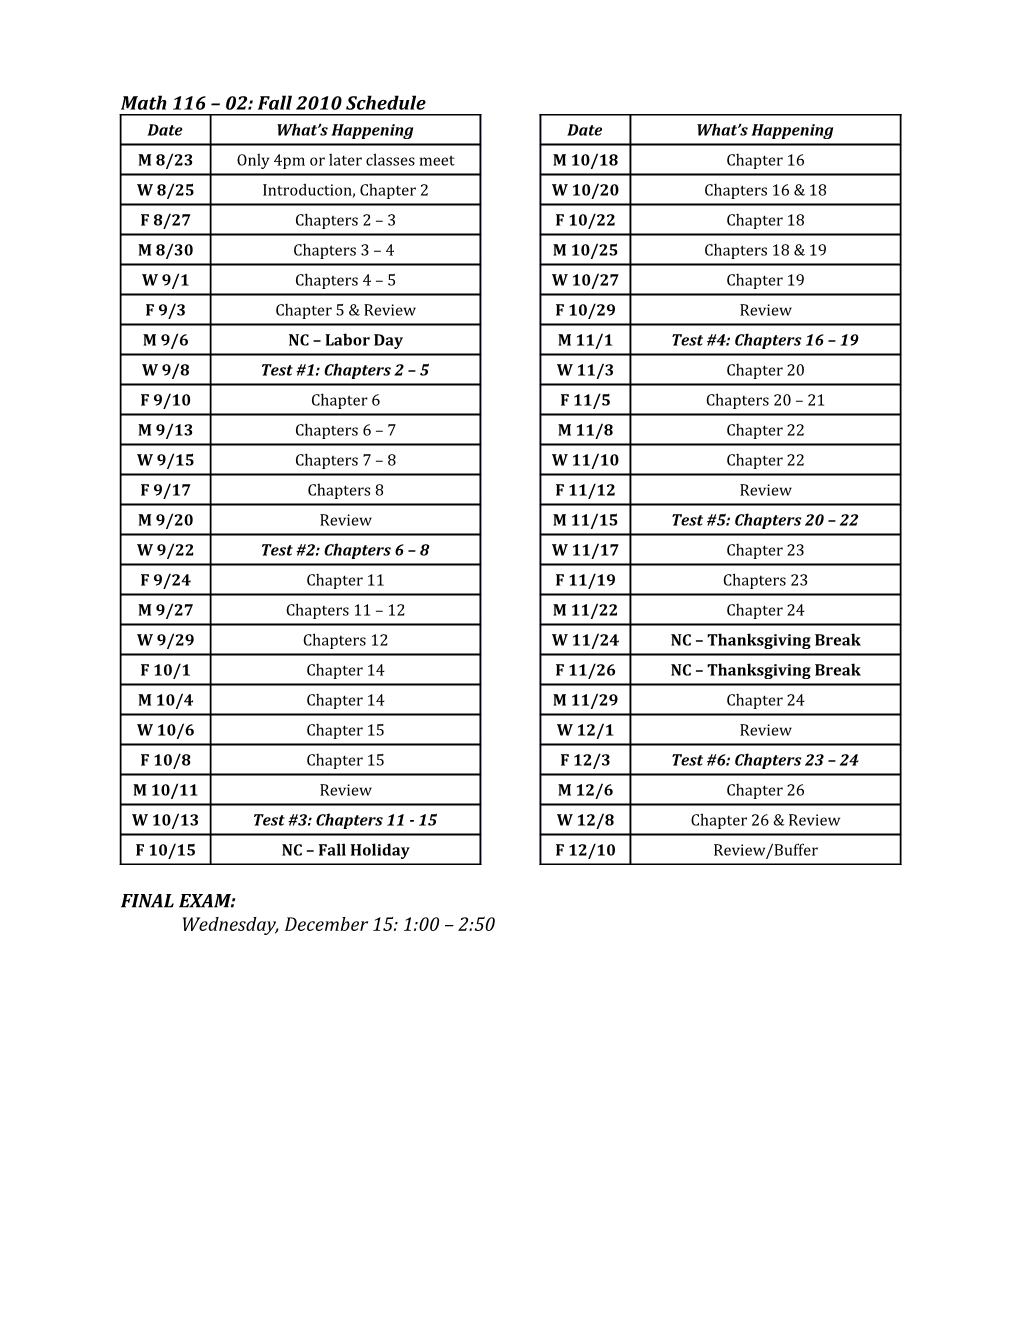 Math 116 02: Fall 2010 Schedule